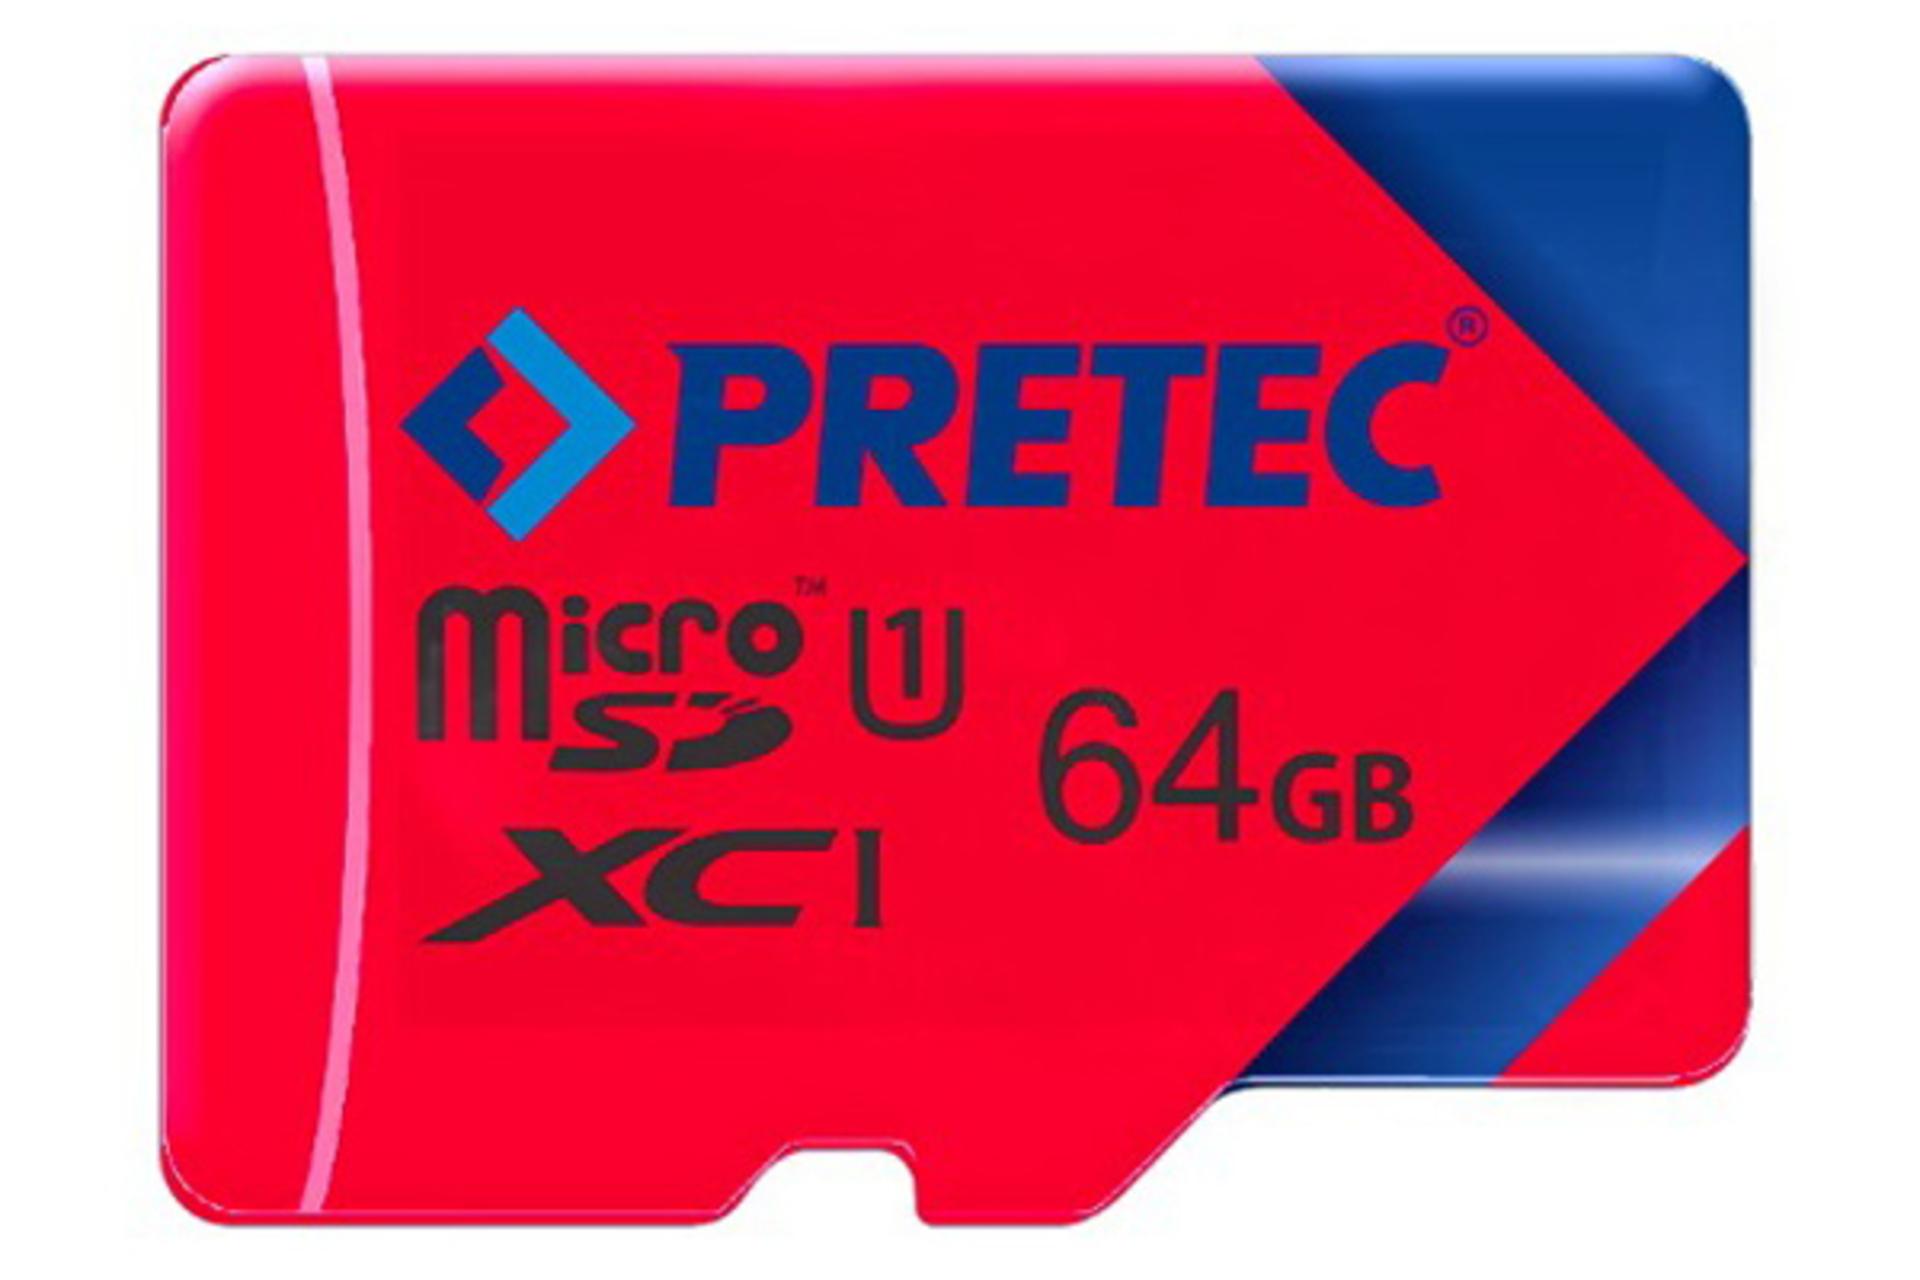 کارت حافظه پرتک microSDXC با ظرفیت 64 گیگابایت کلاس 10